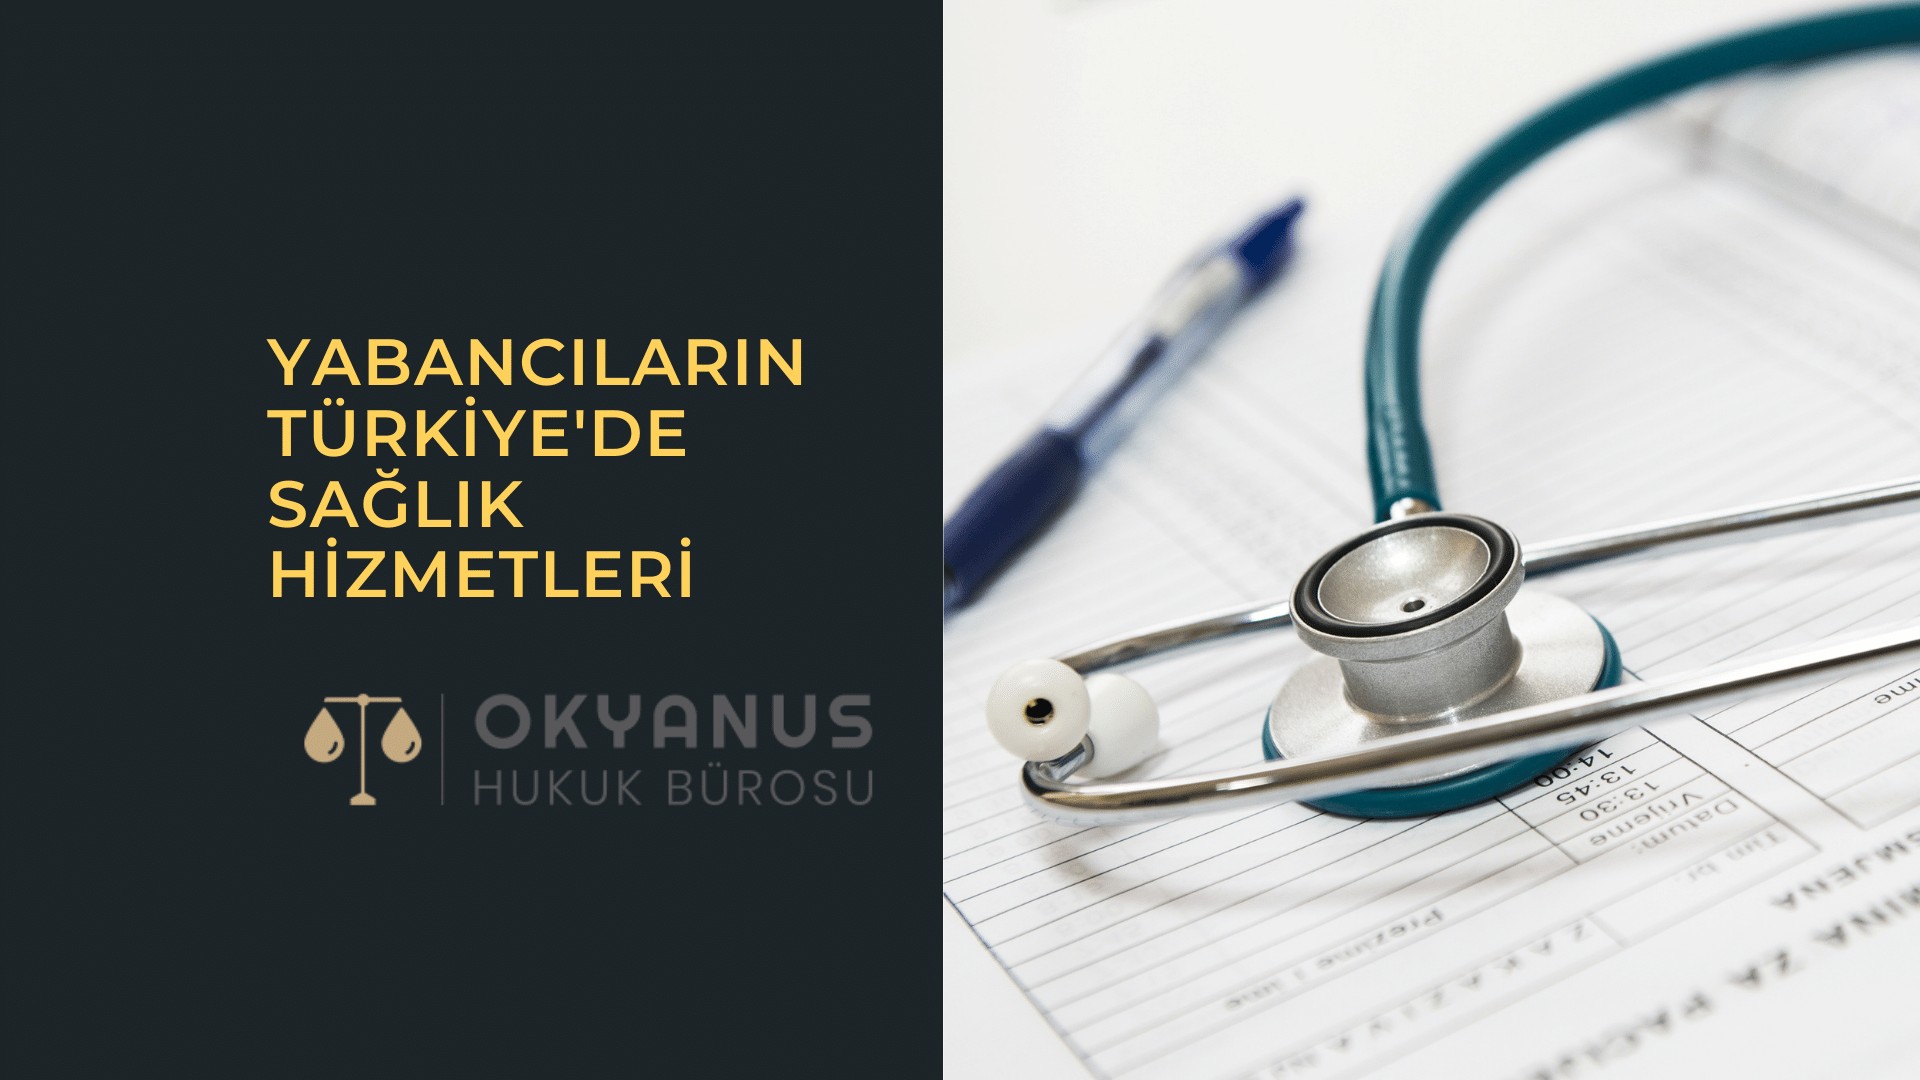 Yabancıların Türkiye'de Sağlık Hizmetleri